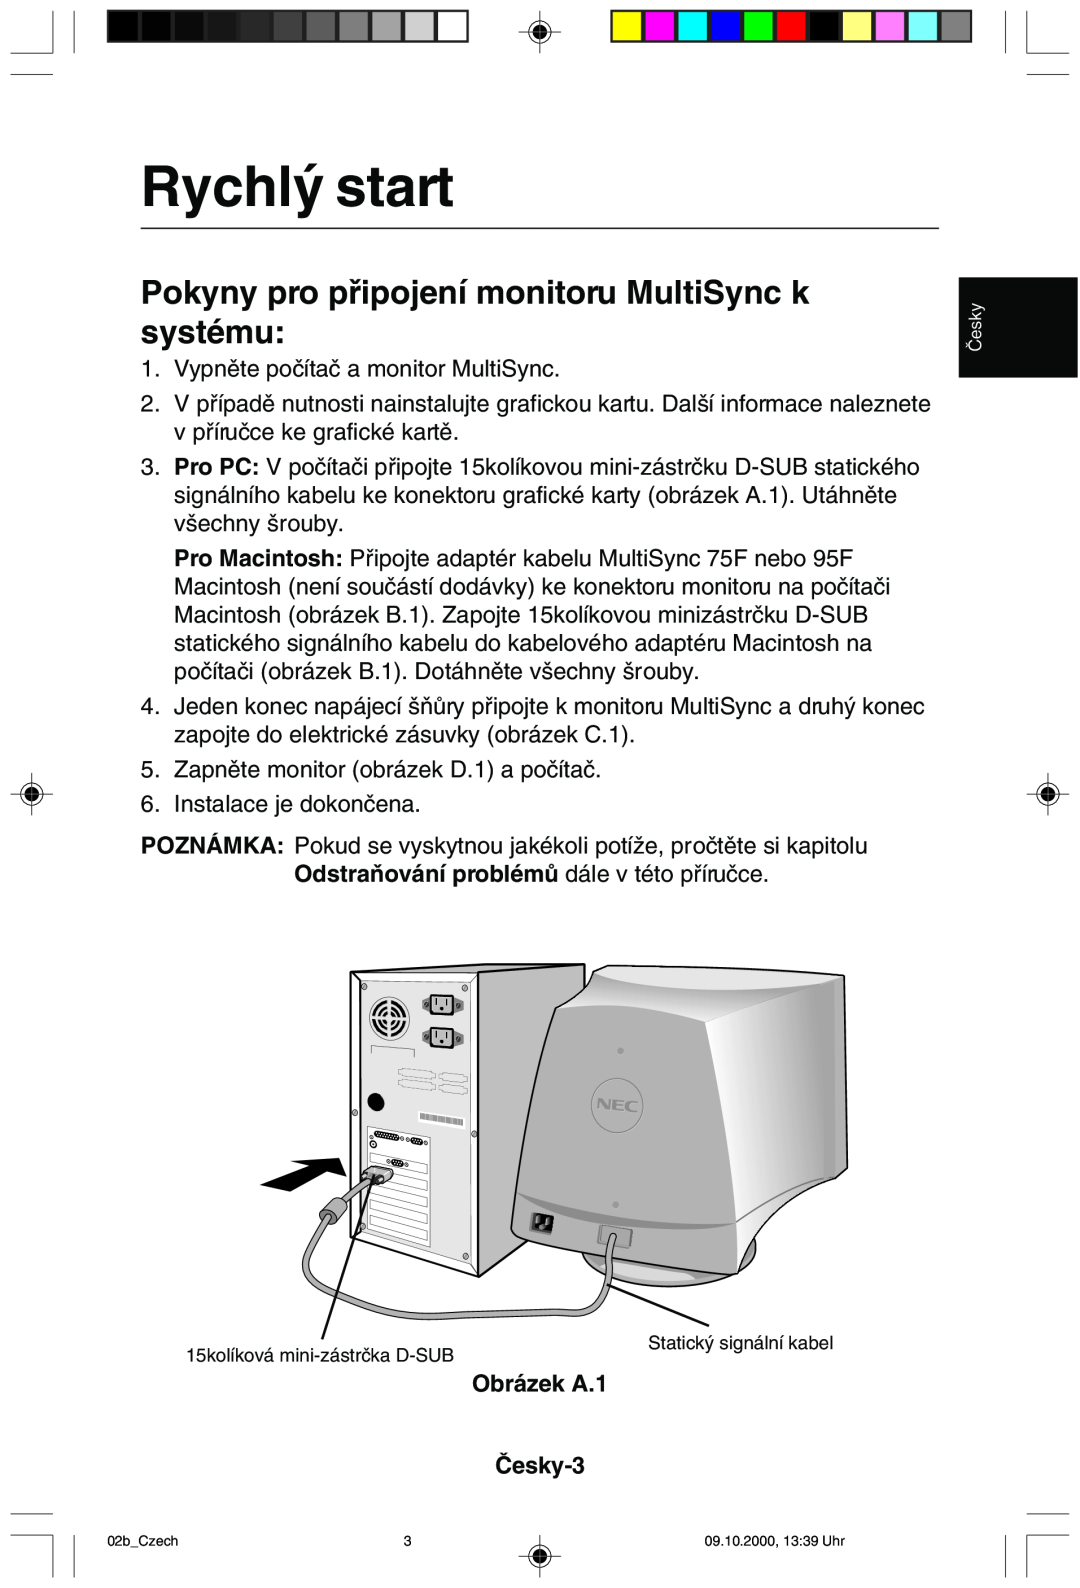 NEC 95F user manual Rychl˘ start, Pokyny pro pﬁipojení monitoru MultiSync k systému, Obrázek A.1 âesky-3 